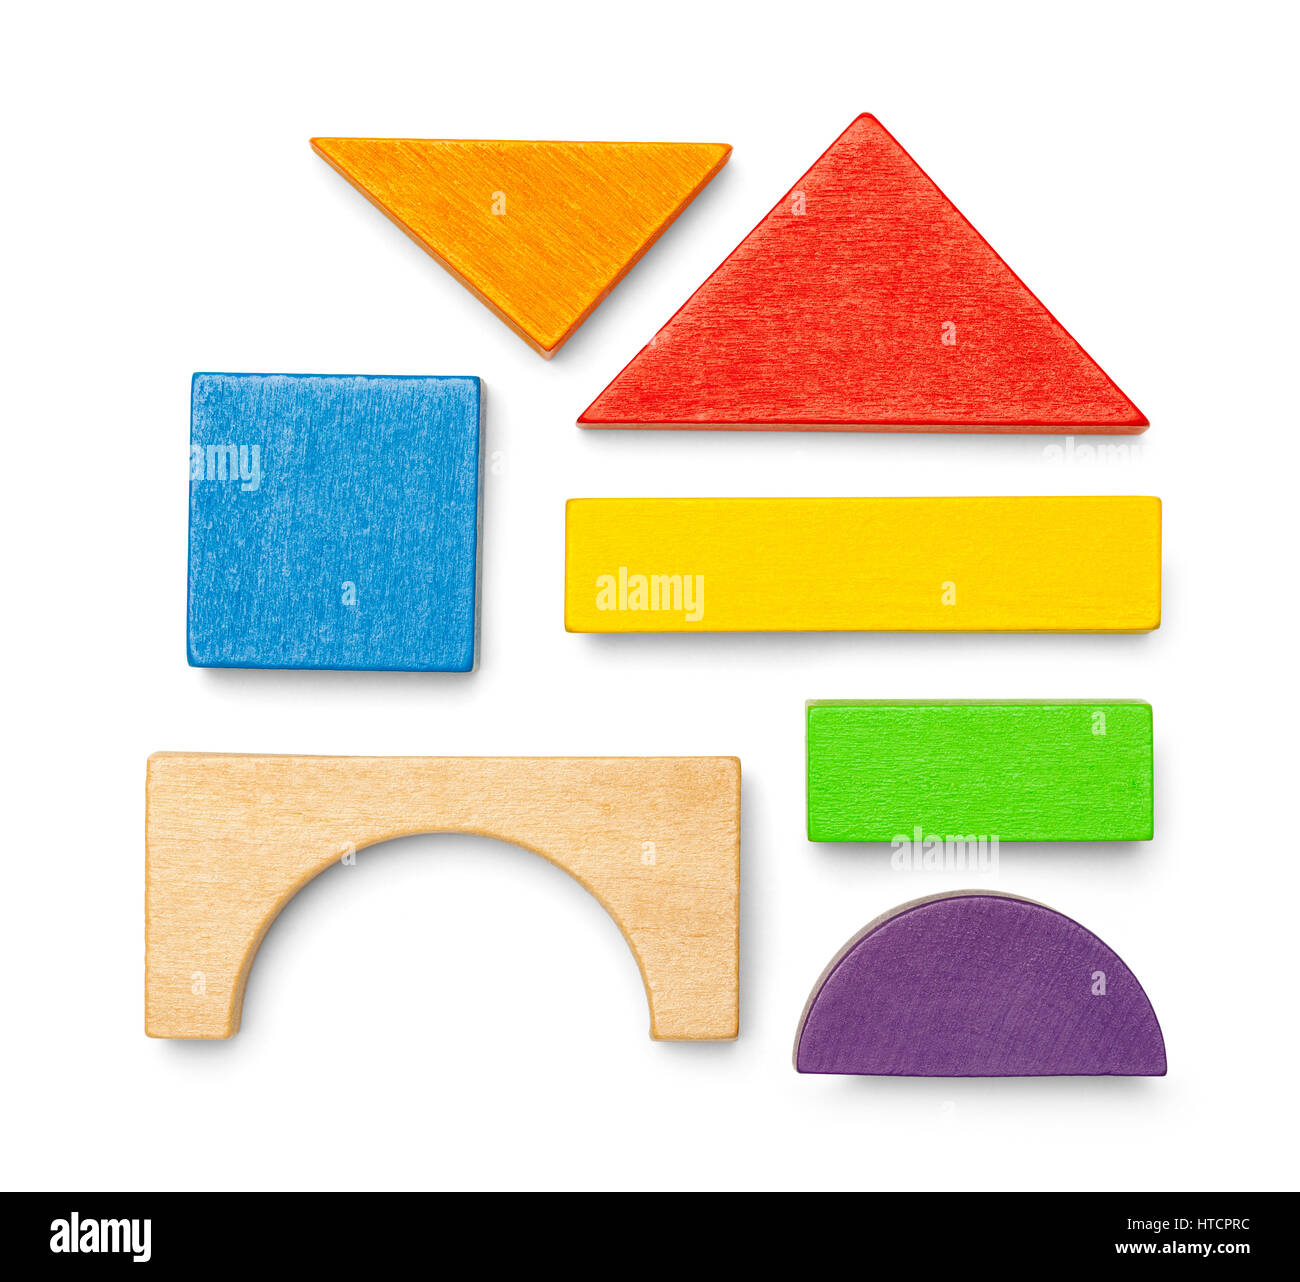 Verschiedene Holz Spielzeug Block Stücke und Formen, Isolated on White Background. Stockfoto